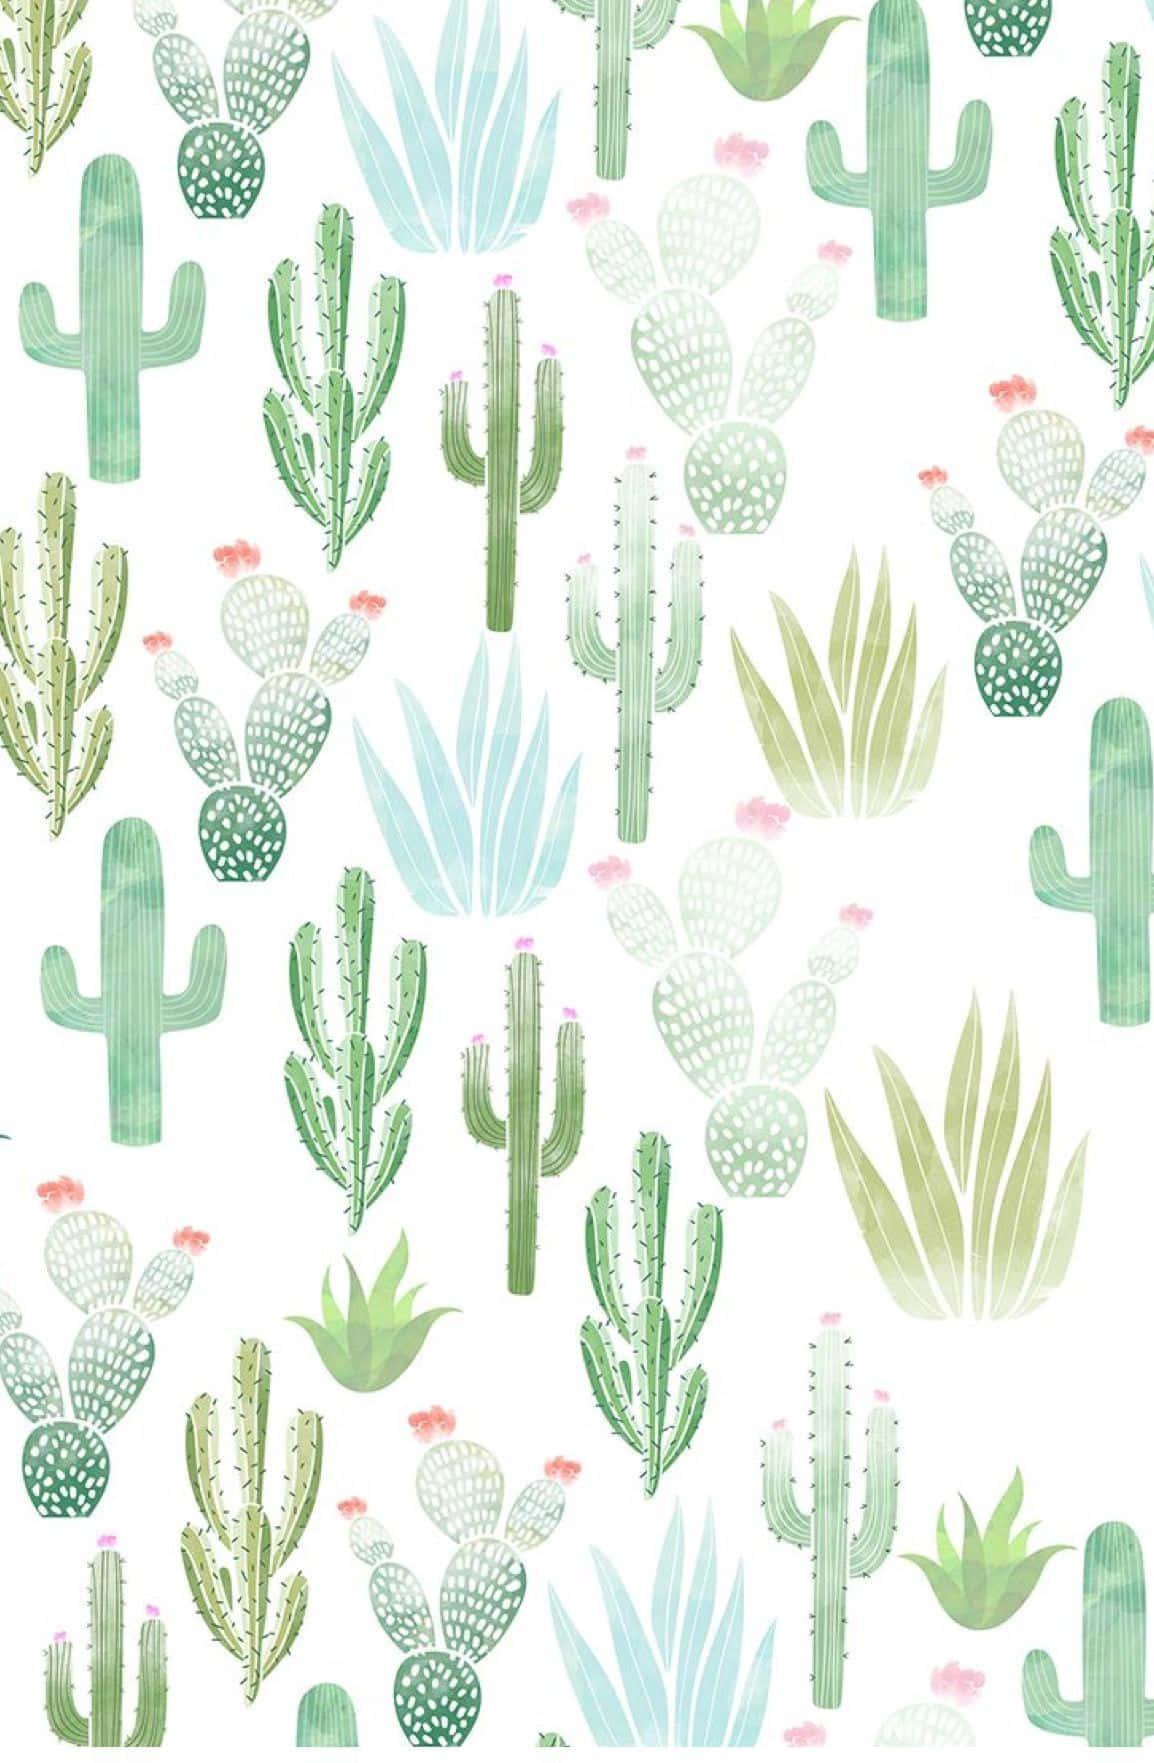 Disfrutadel Desierto Con Un Fondo De Pantalla De Un Cactus En El Iphone. Fondo de pantalla